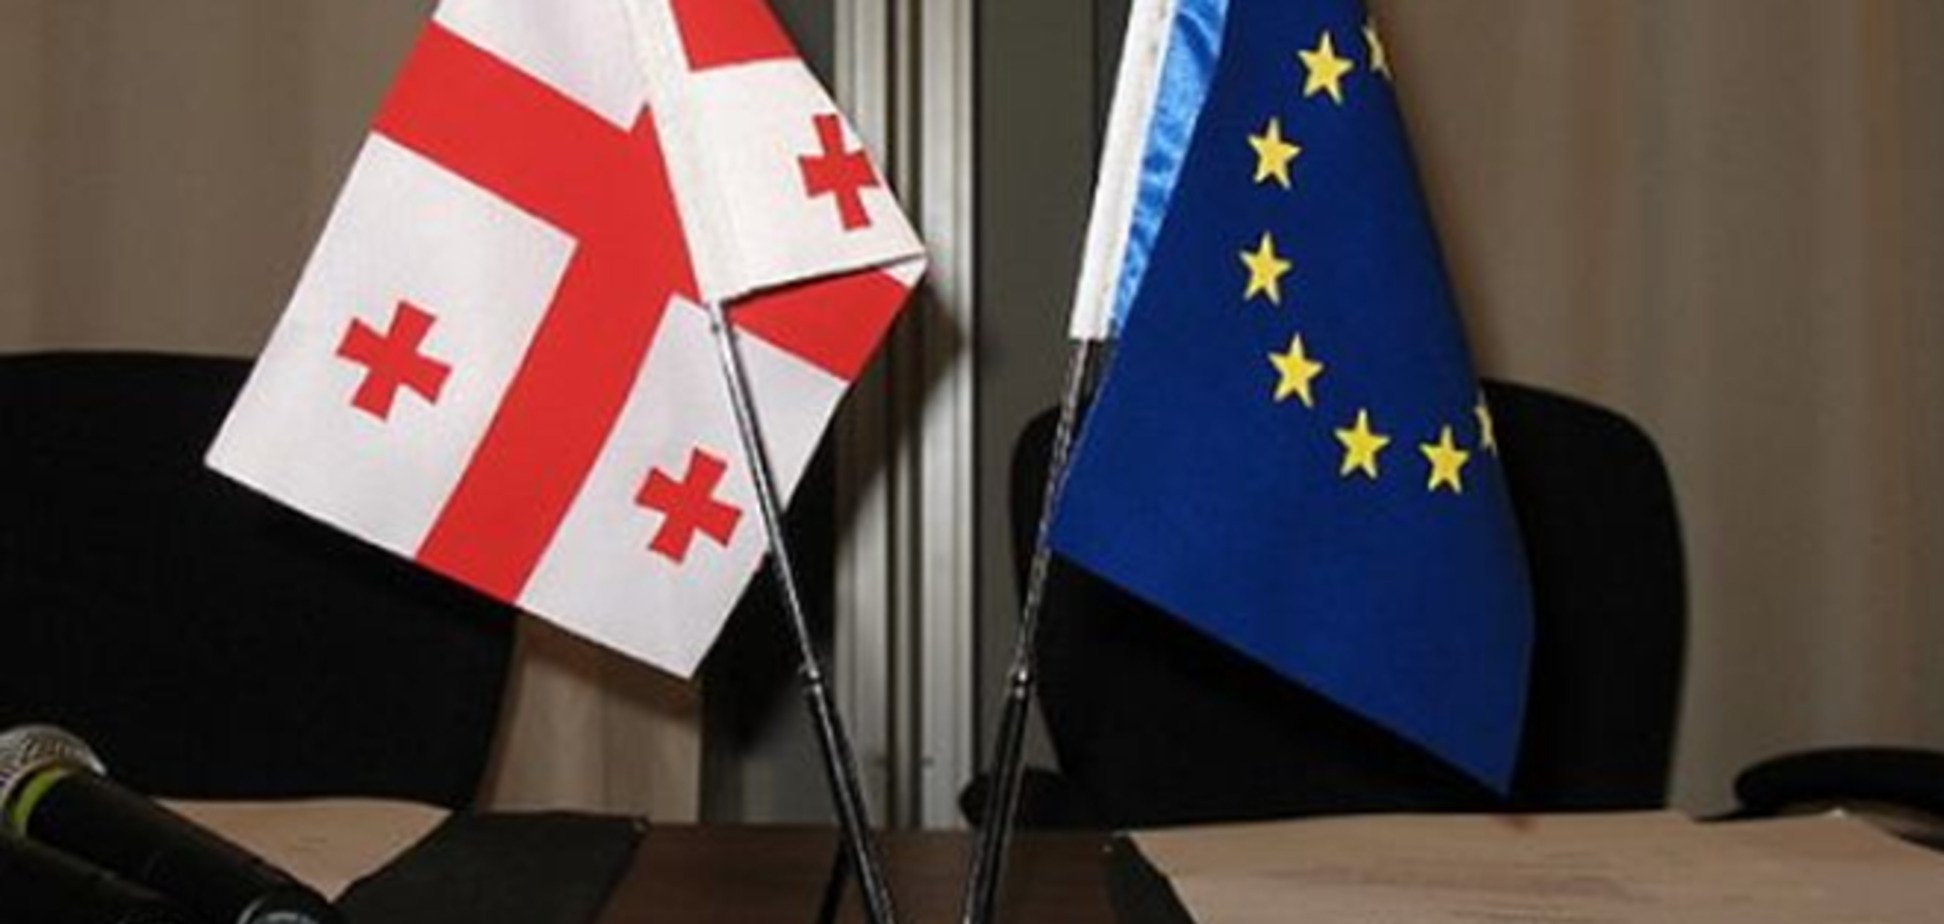 Грузия и ЕС завершили переговоры по ЗСТ